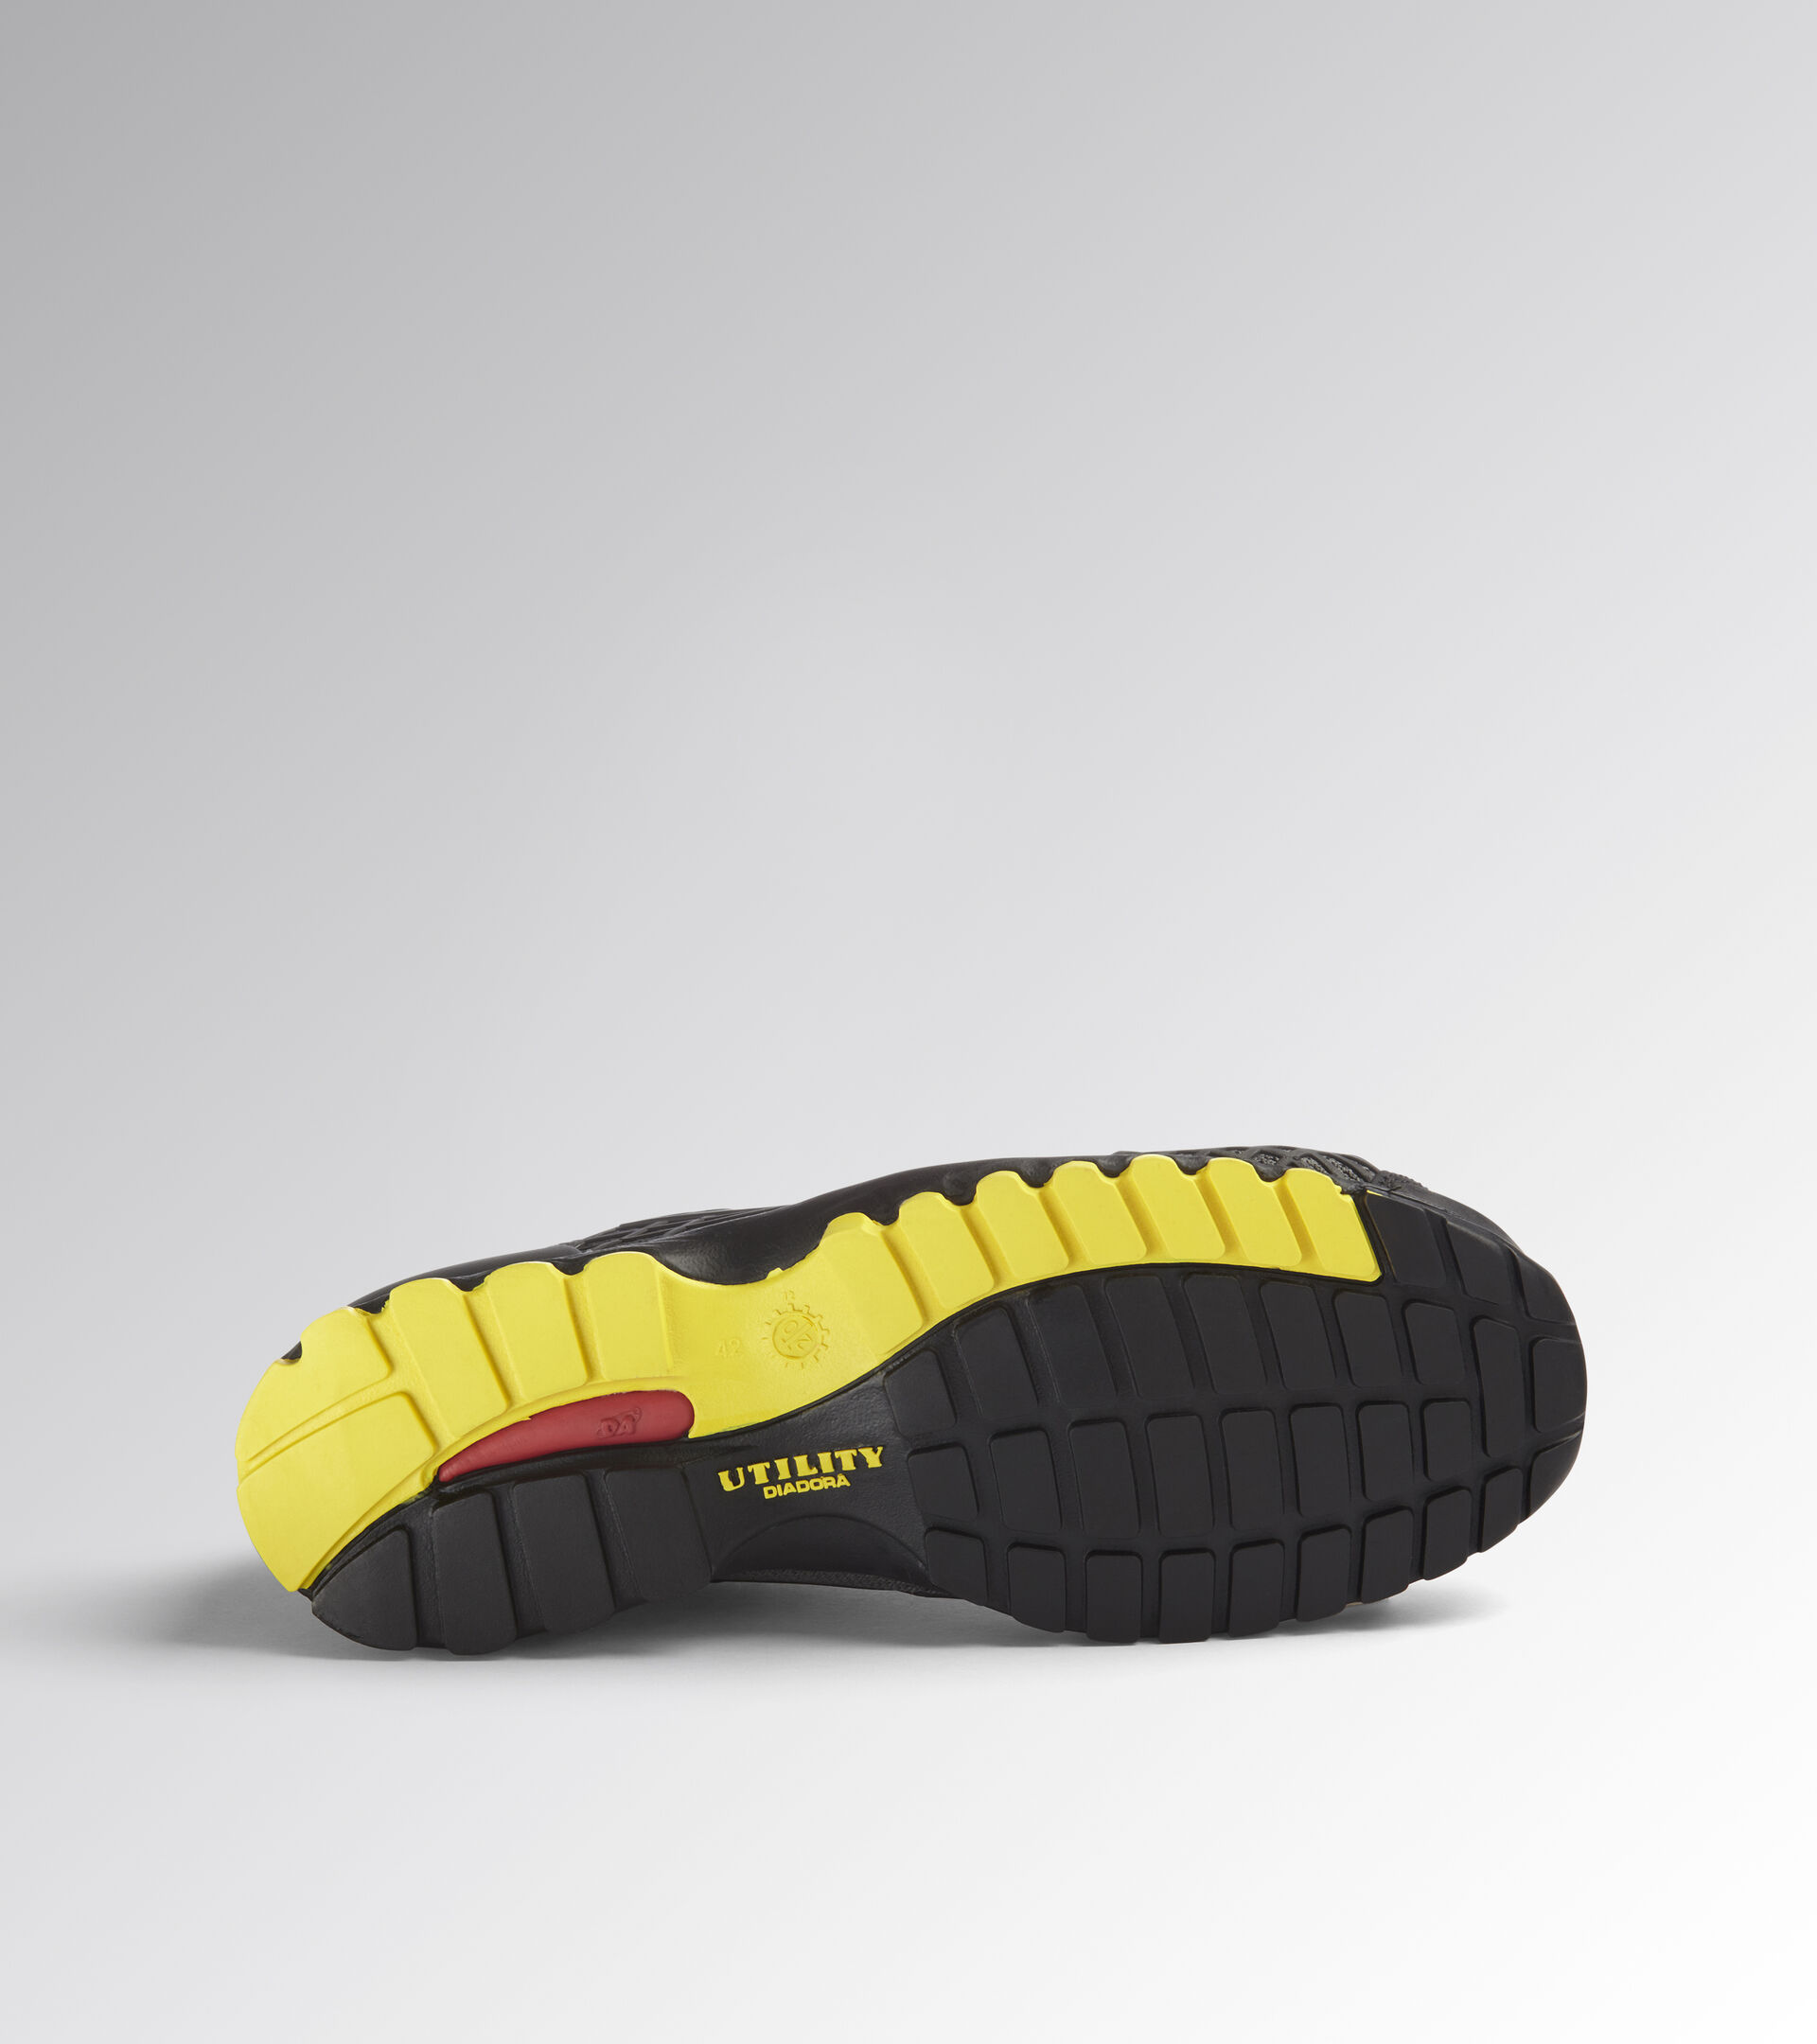 BEAT DA2 TEXT LOW S1P HRO SRC Low safety shoe - Diadora Utility Online  Store CZ